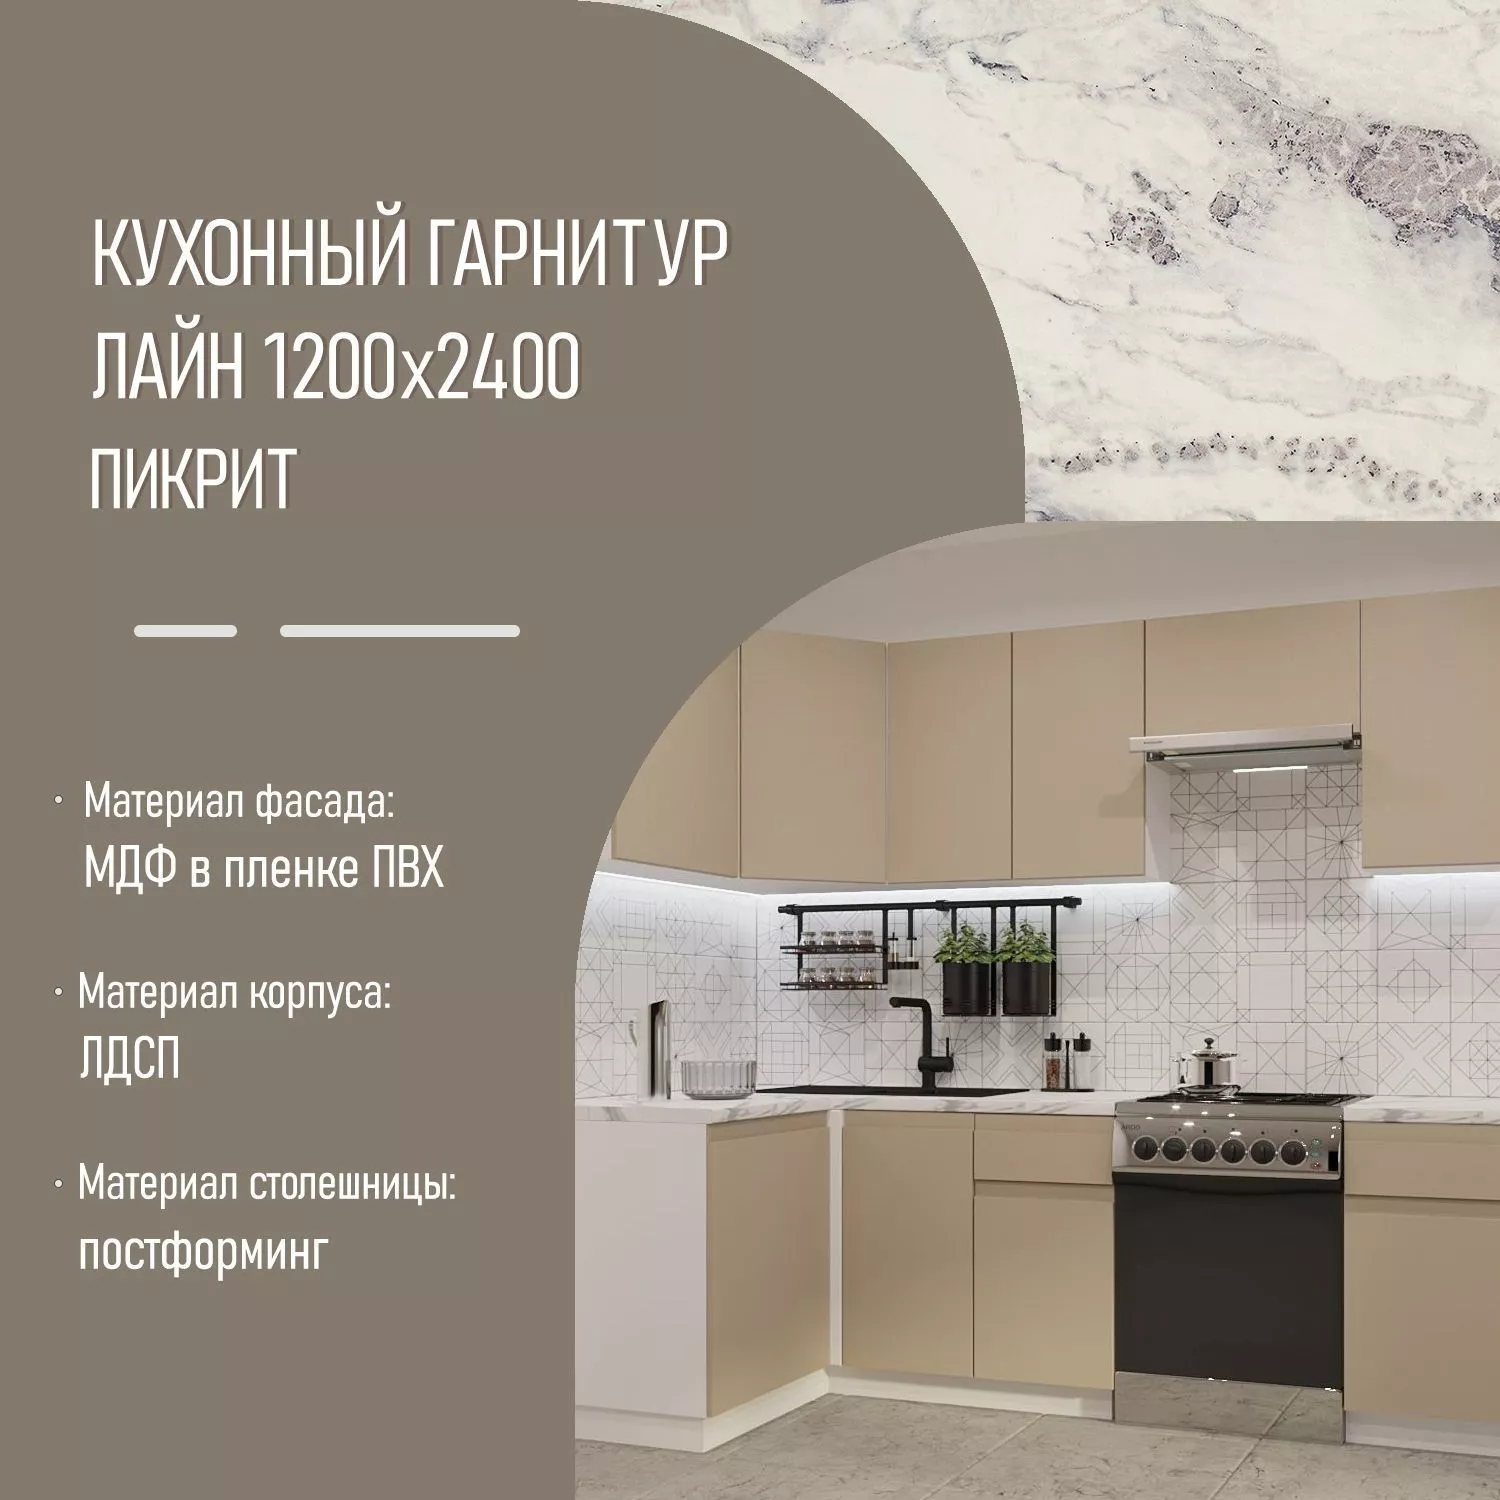 Кухонный гарнитур Пикрит Лайн 1200х2400 (арт.31)